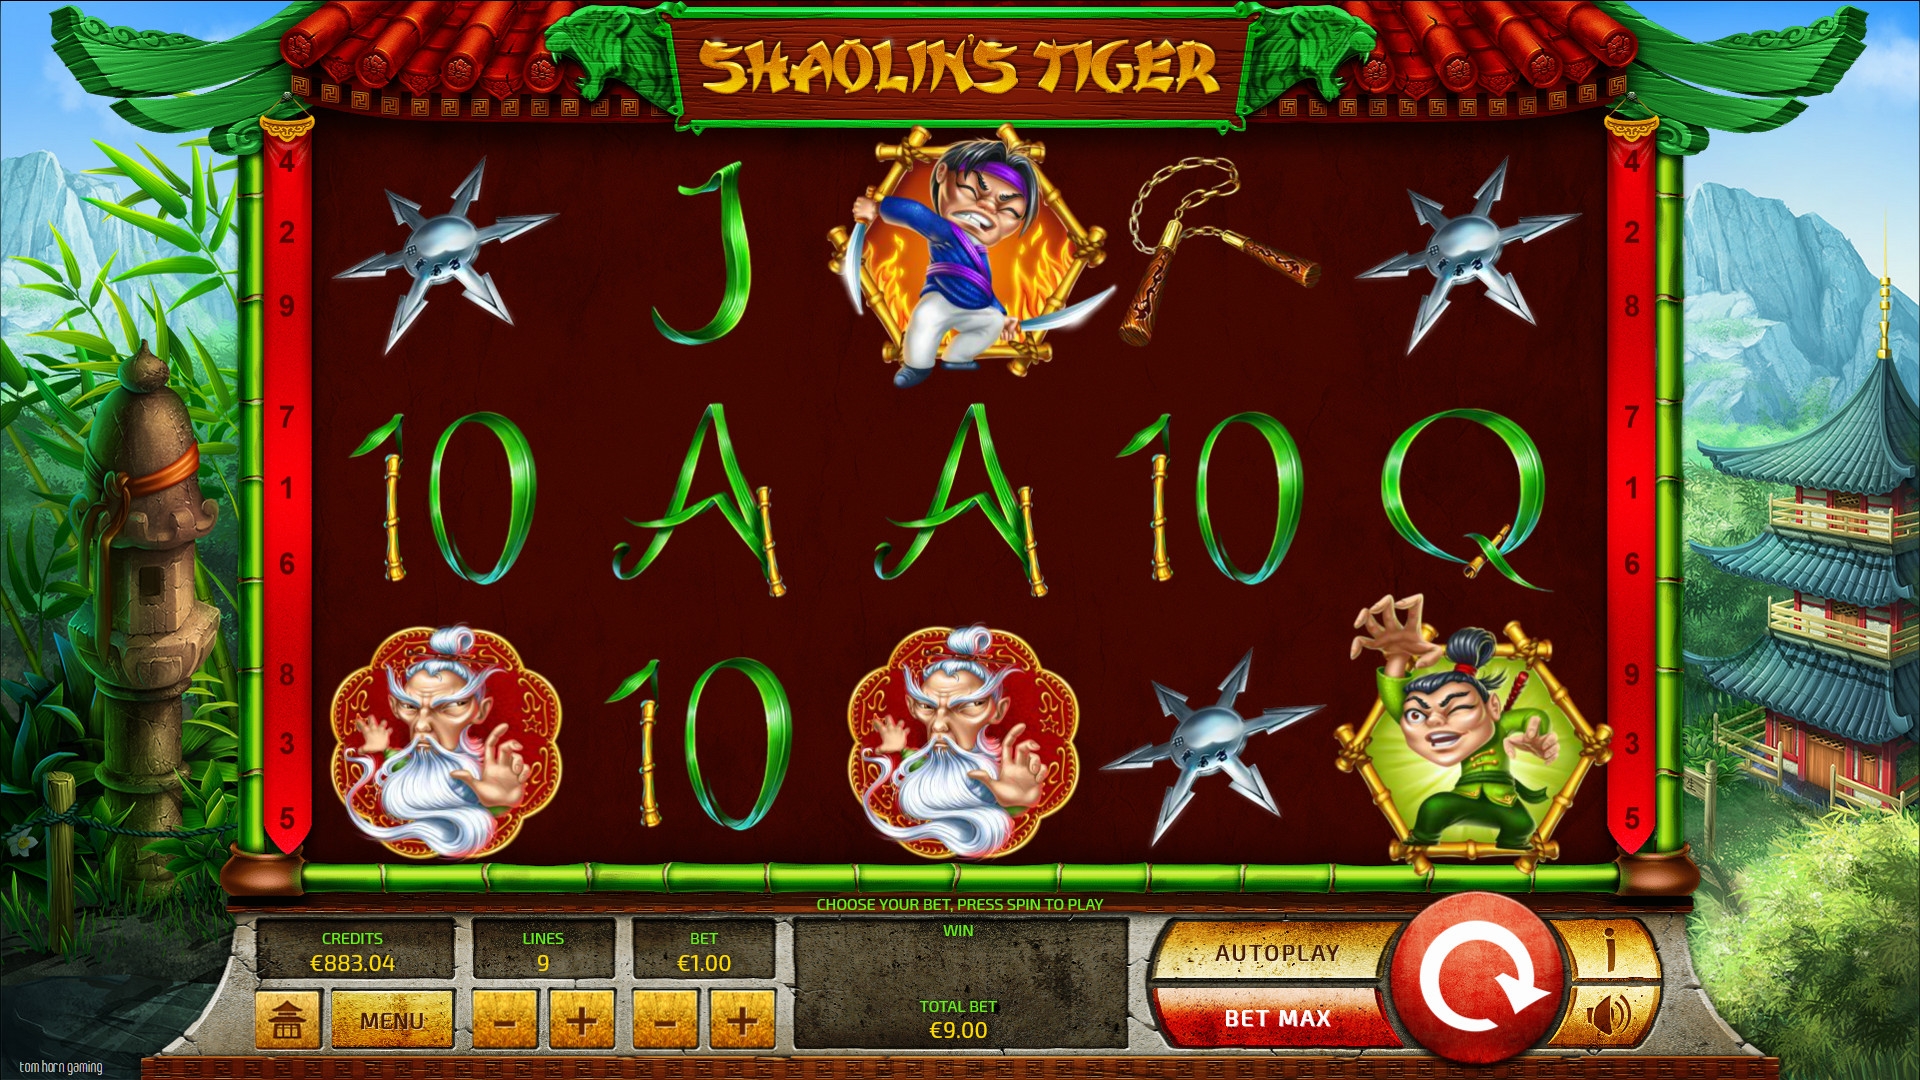 Shaolin’s Tiger (Shaolin’s Tiger) from category Slots